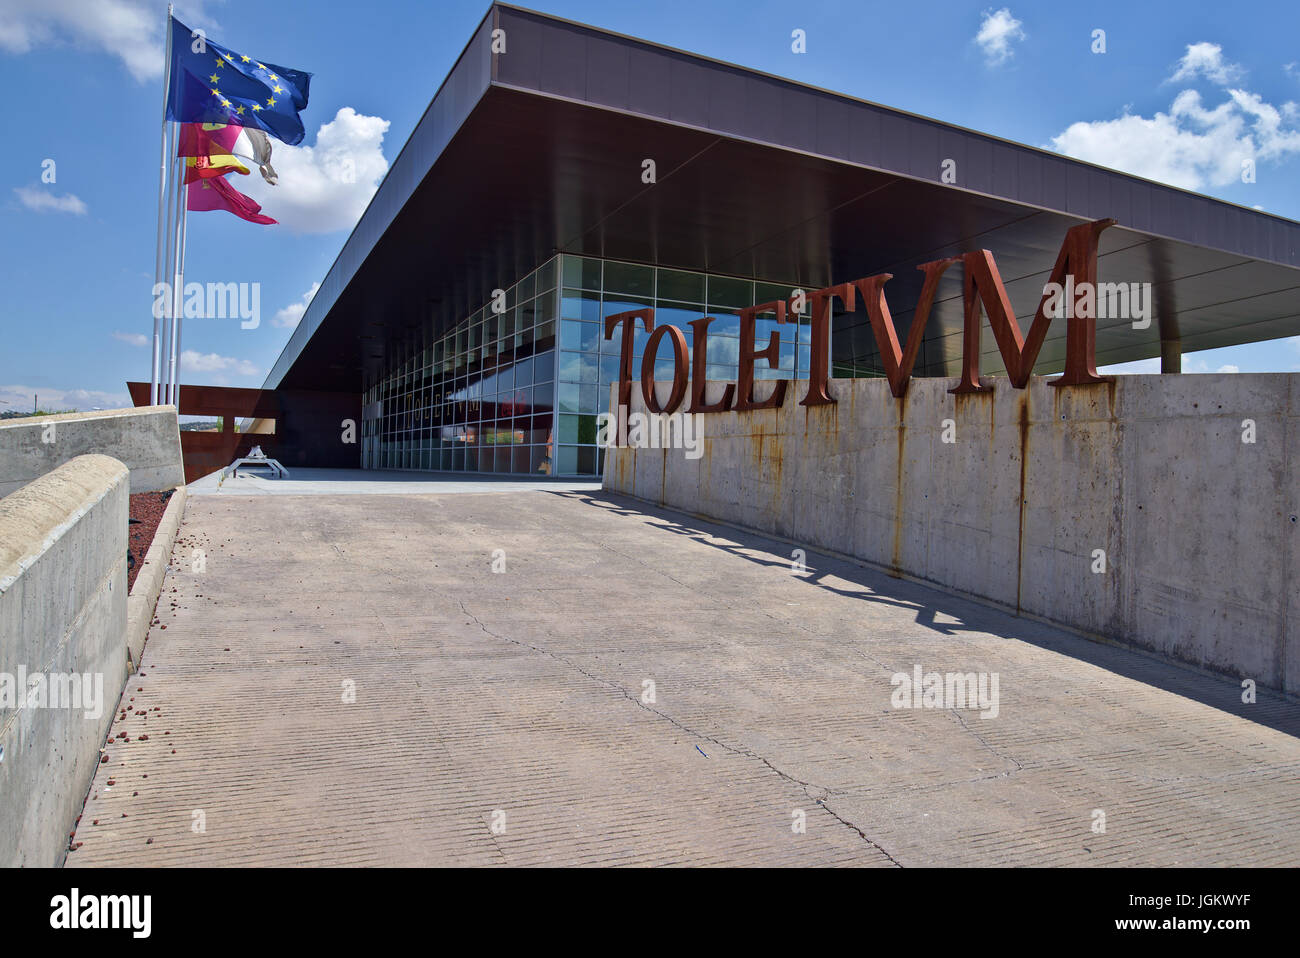 Toletum Toledo pour le centre touristique. Construction Bâtiment public sans succès de nos jours non utilisés. Image prise à Tolède, Juillet 2017 Banque D'Images